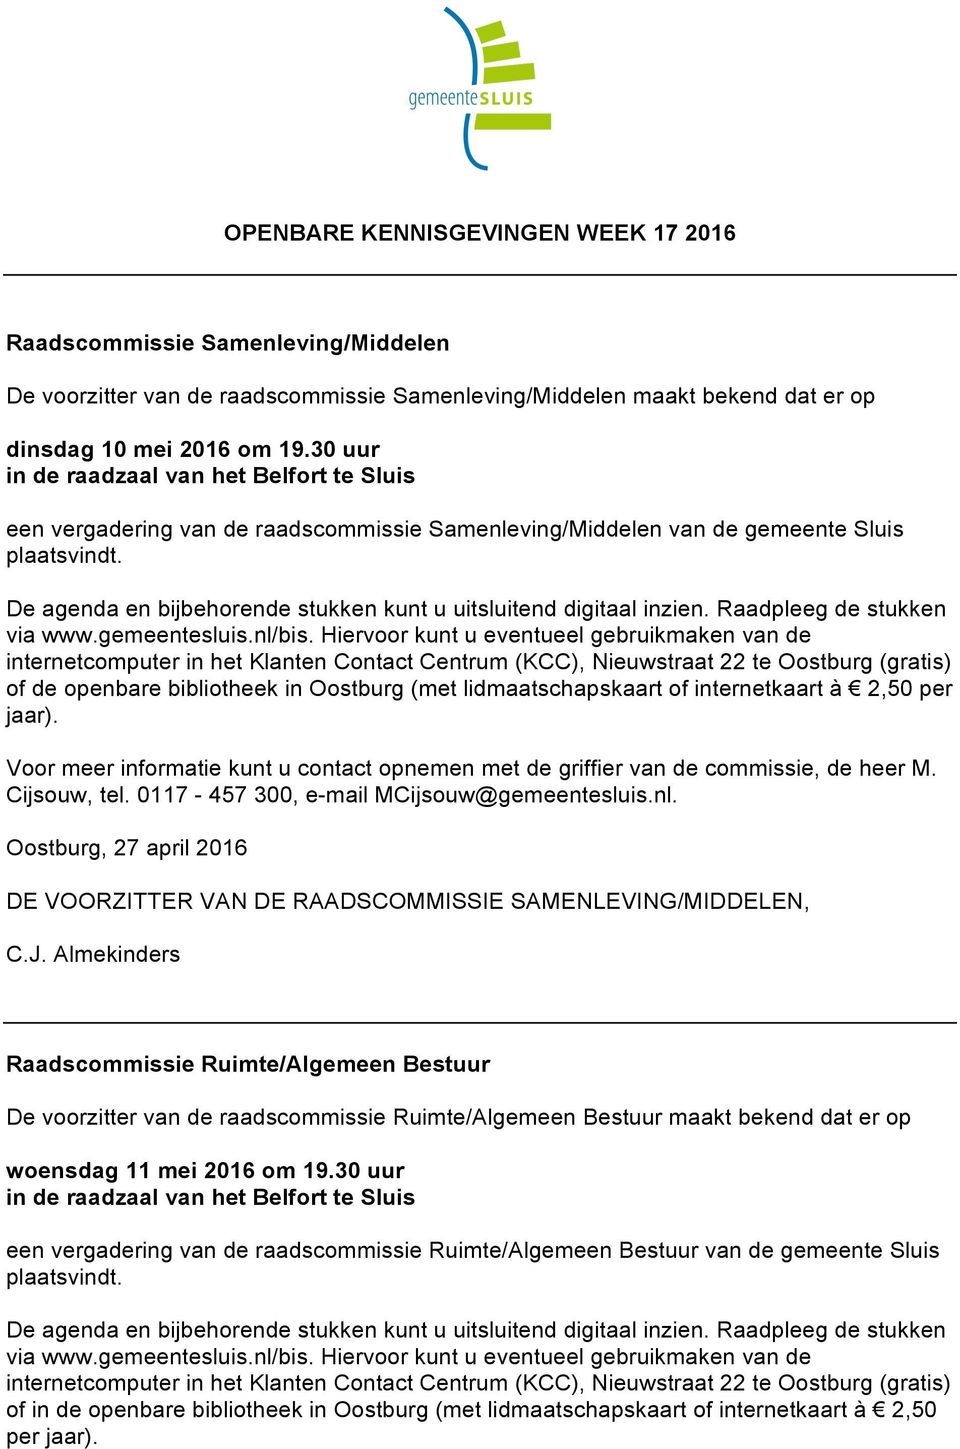 De agenda en bijbehorende stukken kunt u uitsluitend digitaal inzien. Raadpleeg de stukken via www.gemeentesluis.nl/bis.